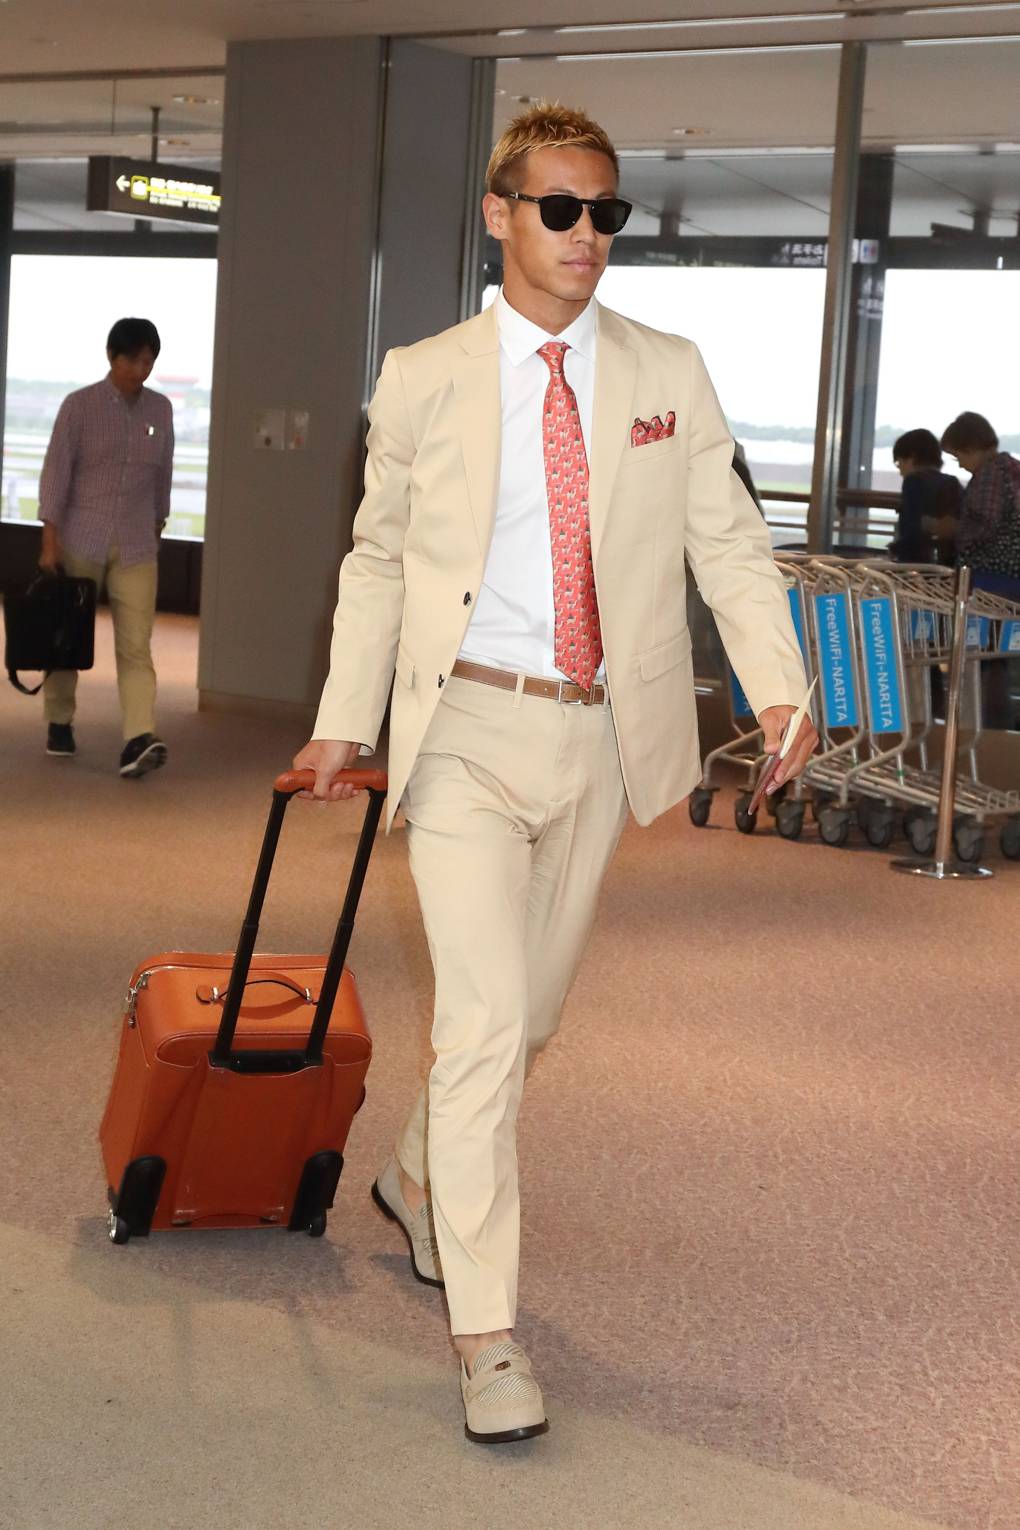 Keisuke Honda rất đam mê thời trang, anh được mệnh danh là tay chơi của thời trang trong giới cầu thủ